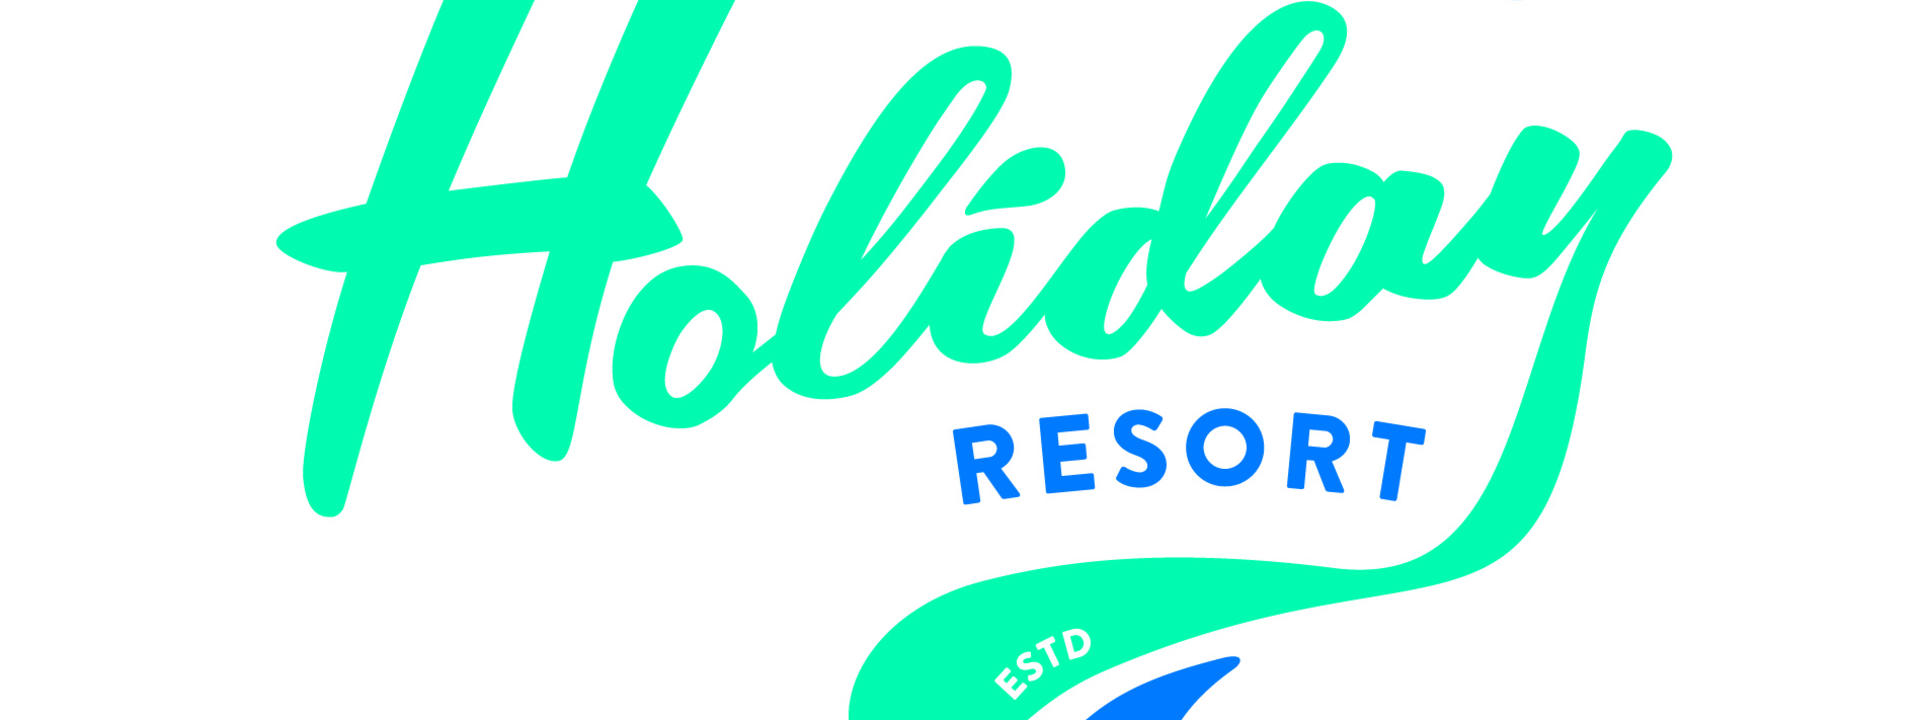 Logo: Lake Taupo Holiday Resort